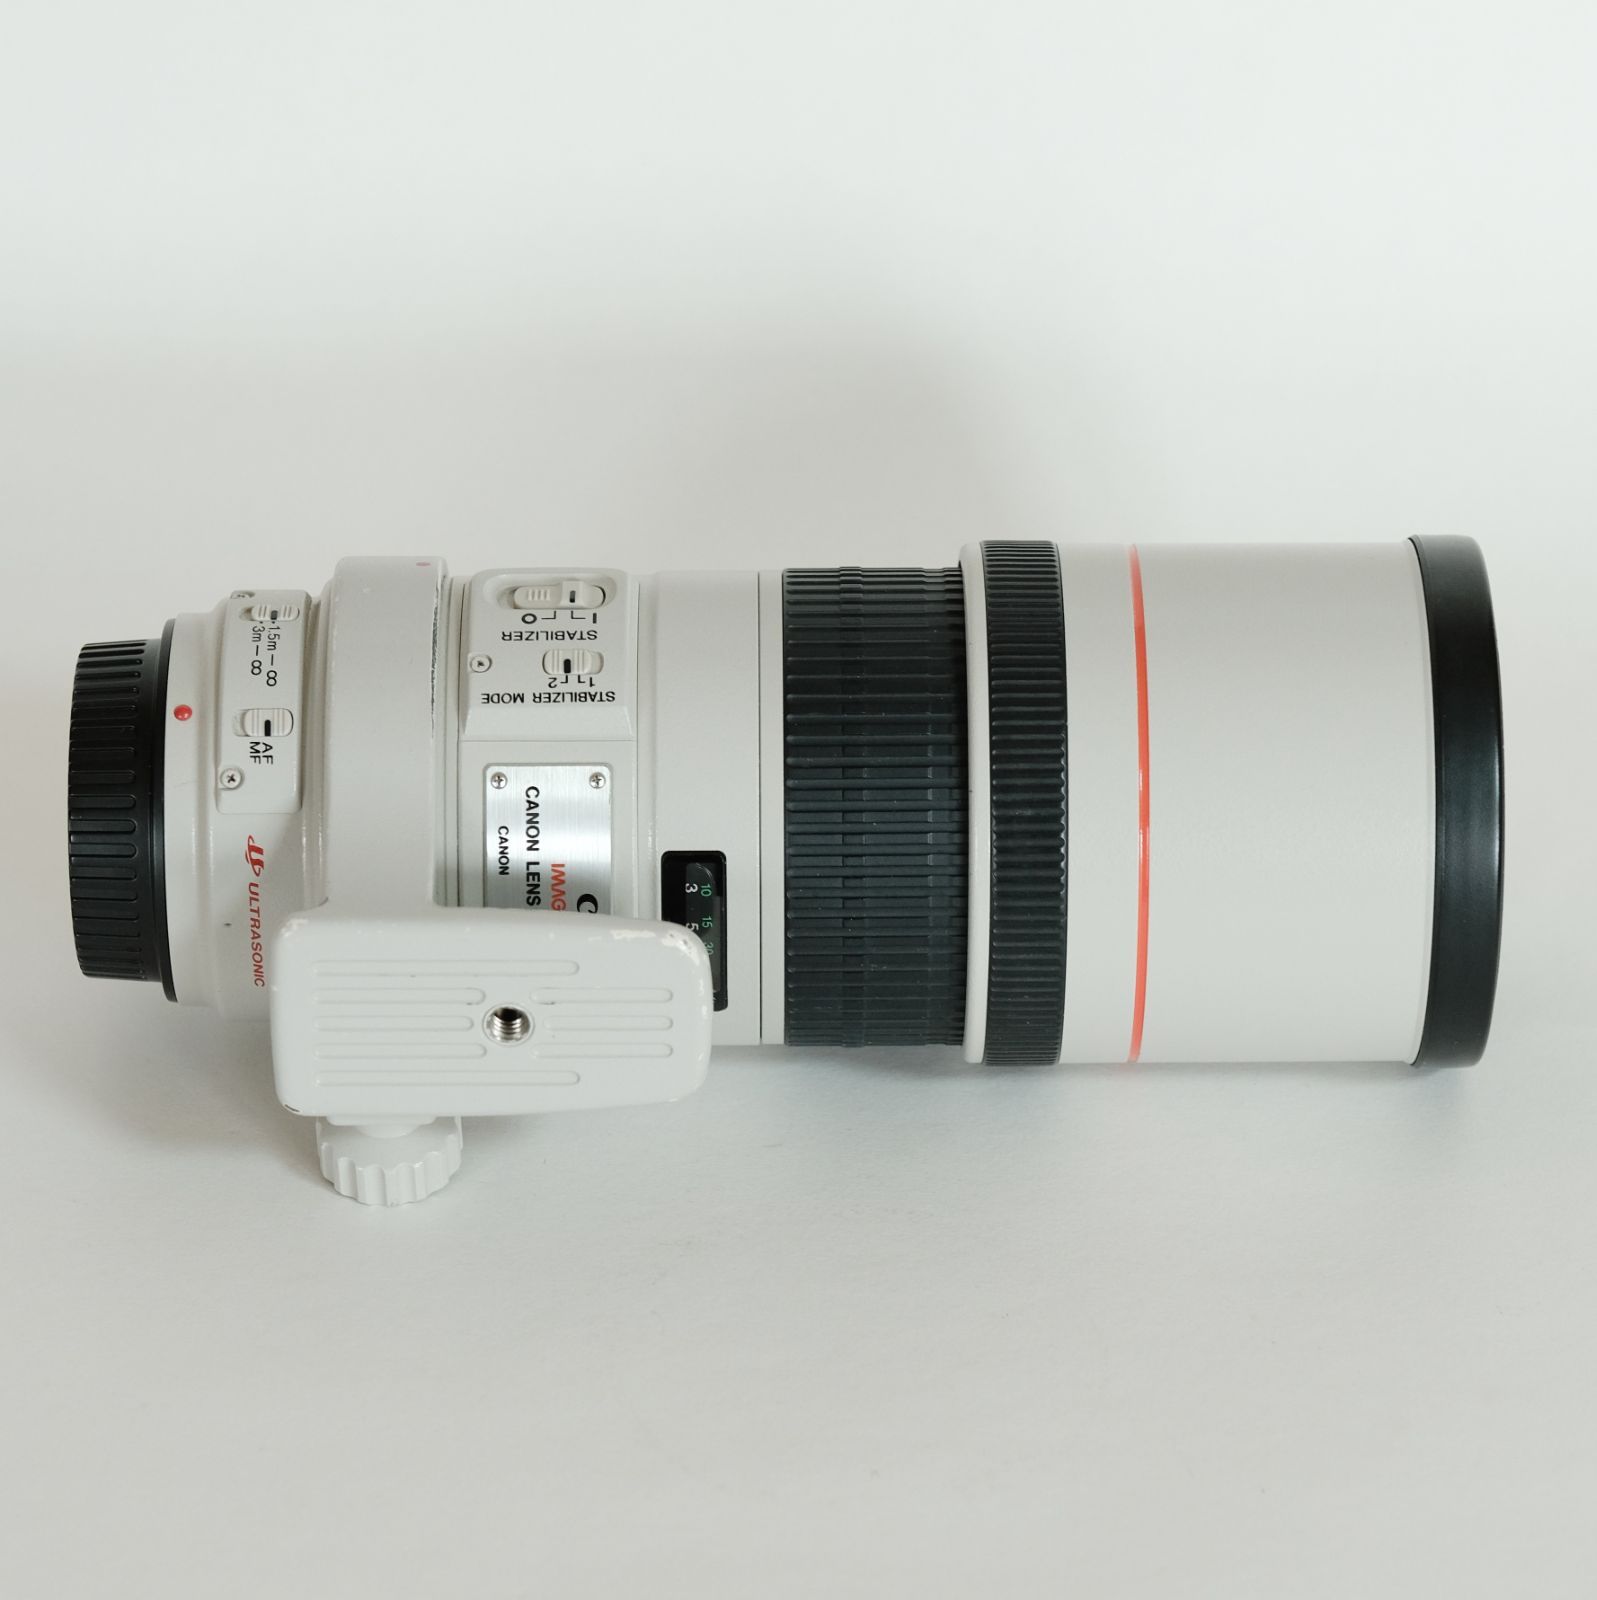 Canonキヤノン望遠レンズEF300mm F4L - レンズ(単焦点)